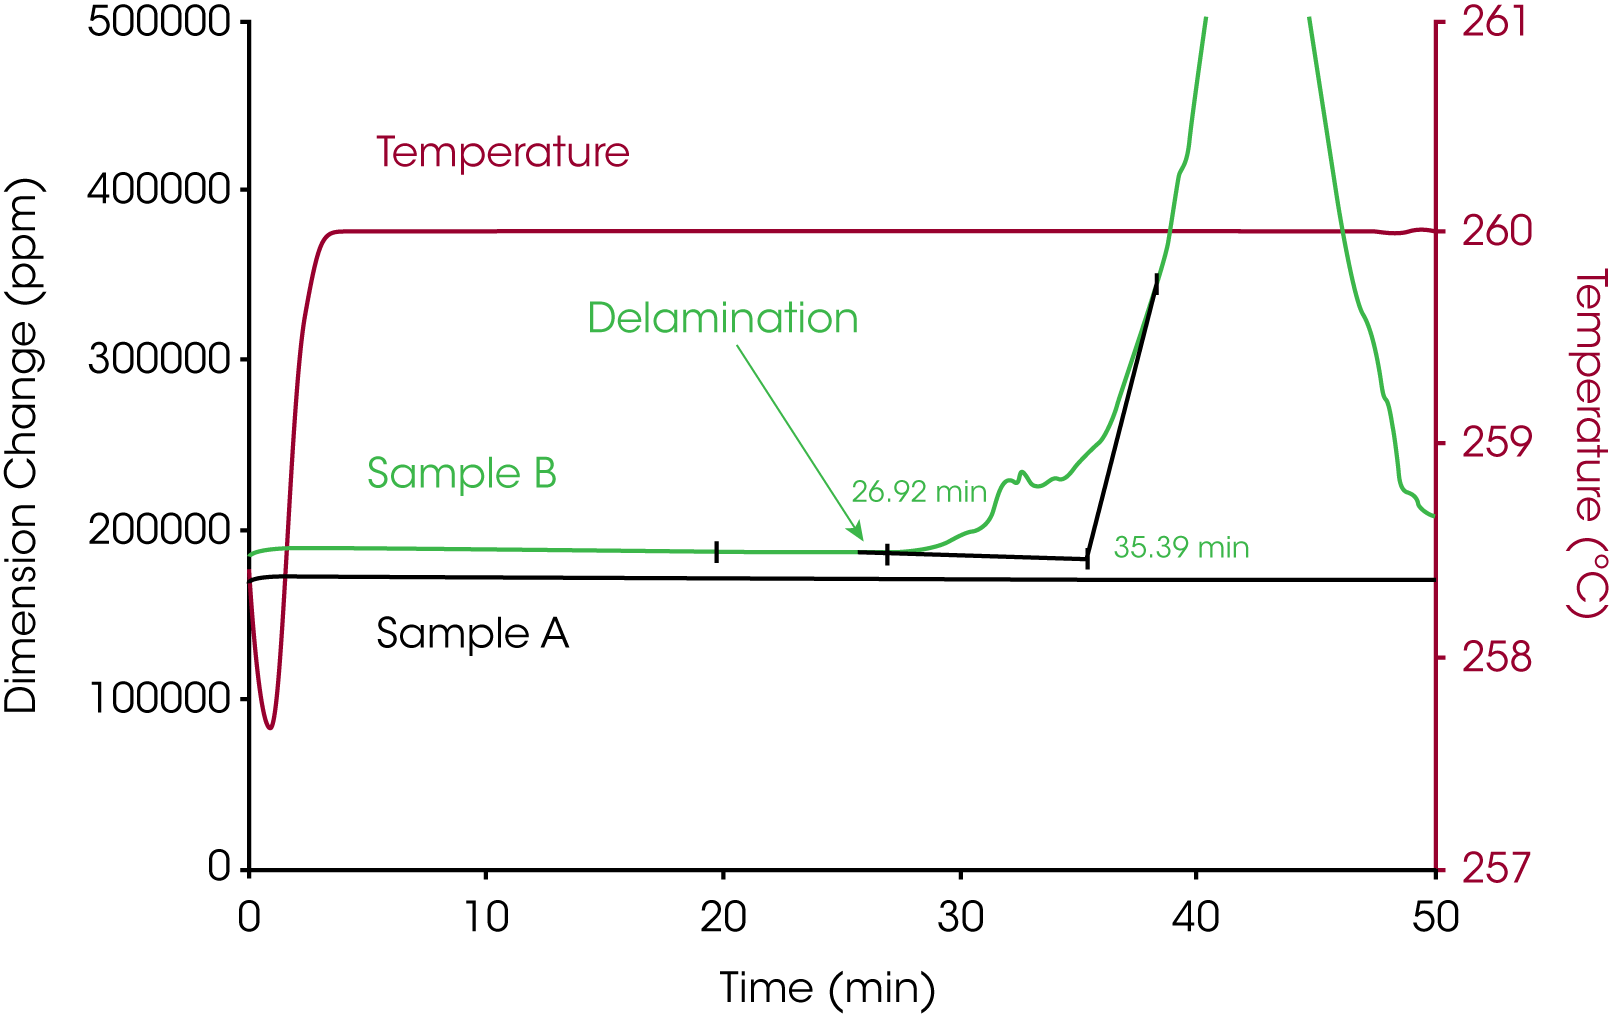 Figure 3. Comparaison de la stabilité thermique de deux échantillons pendant la Zone 3